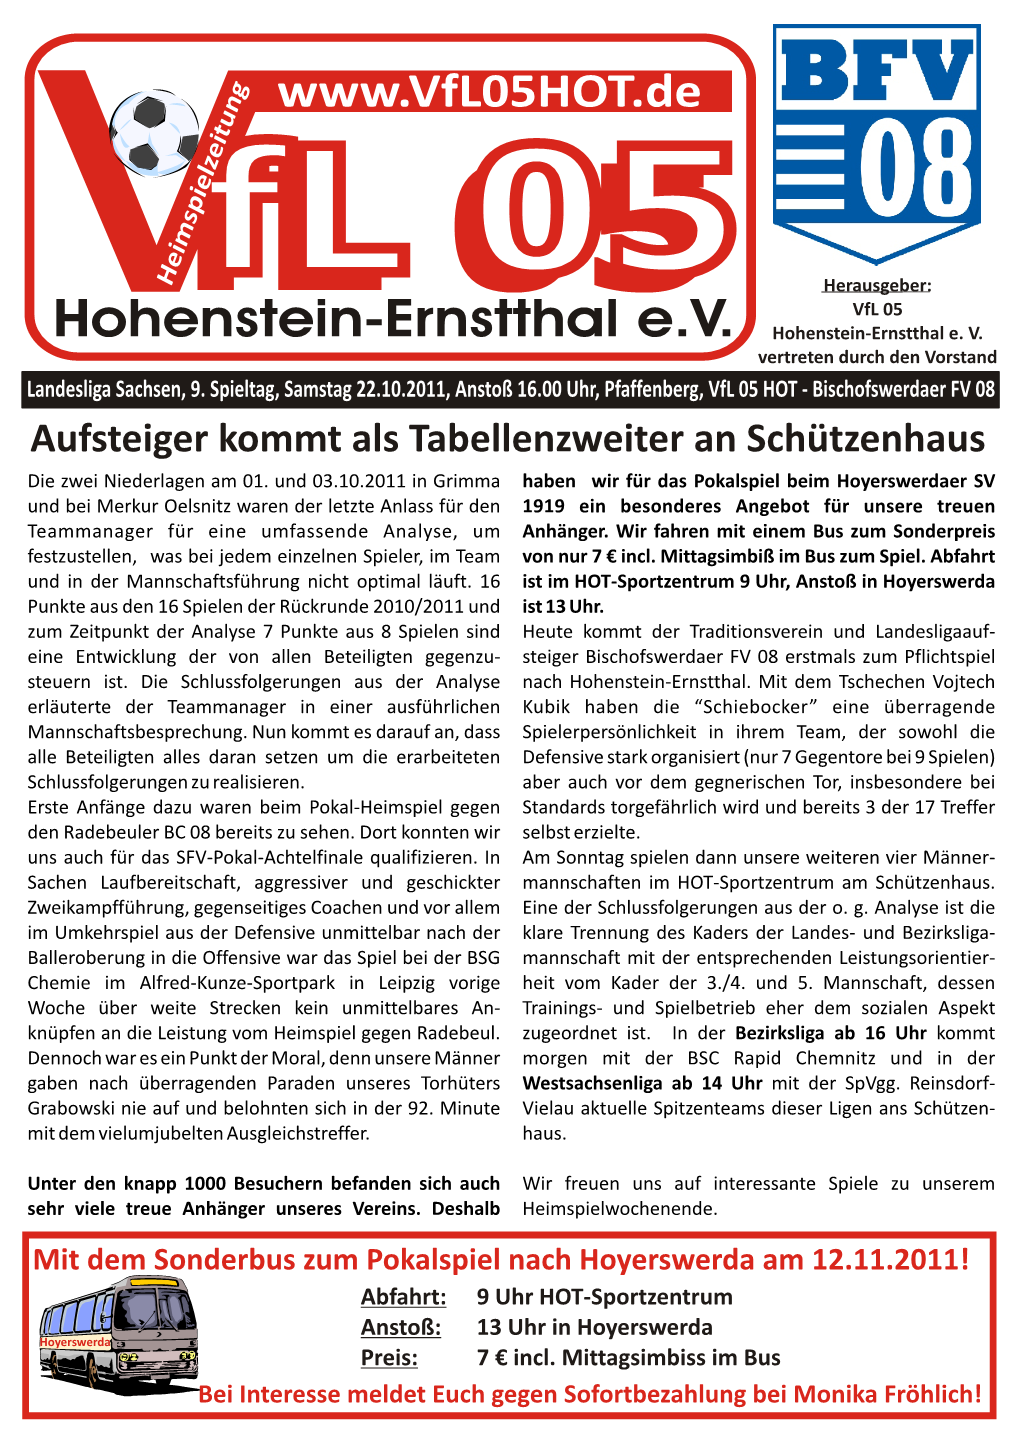 Vfl 05 Hohenstein-Ernstthal Gegen Bischofswerdaer FV 08 Das